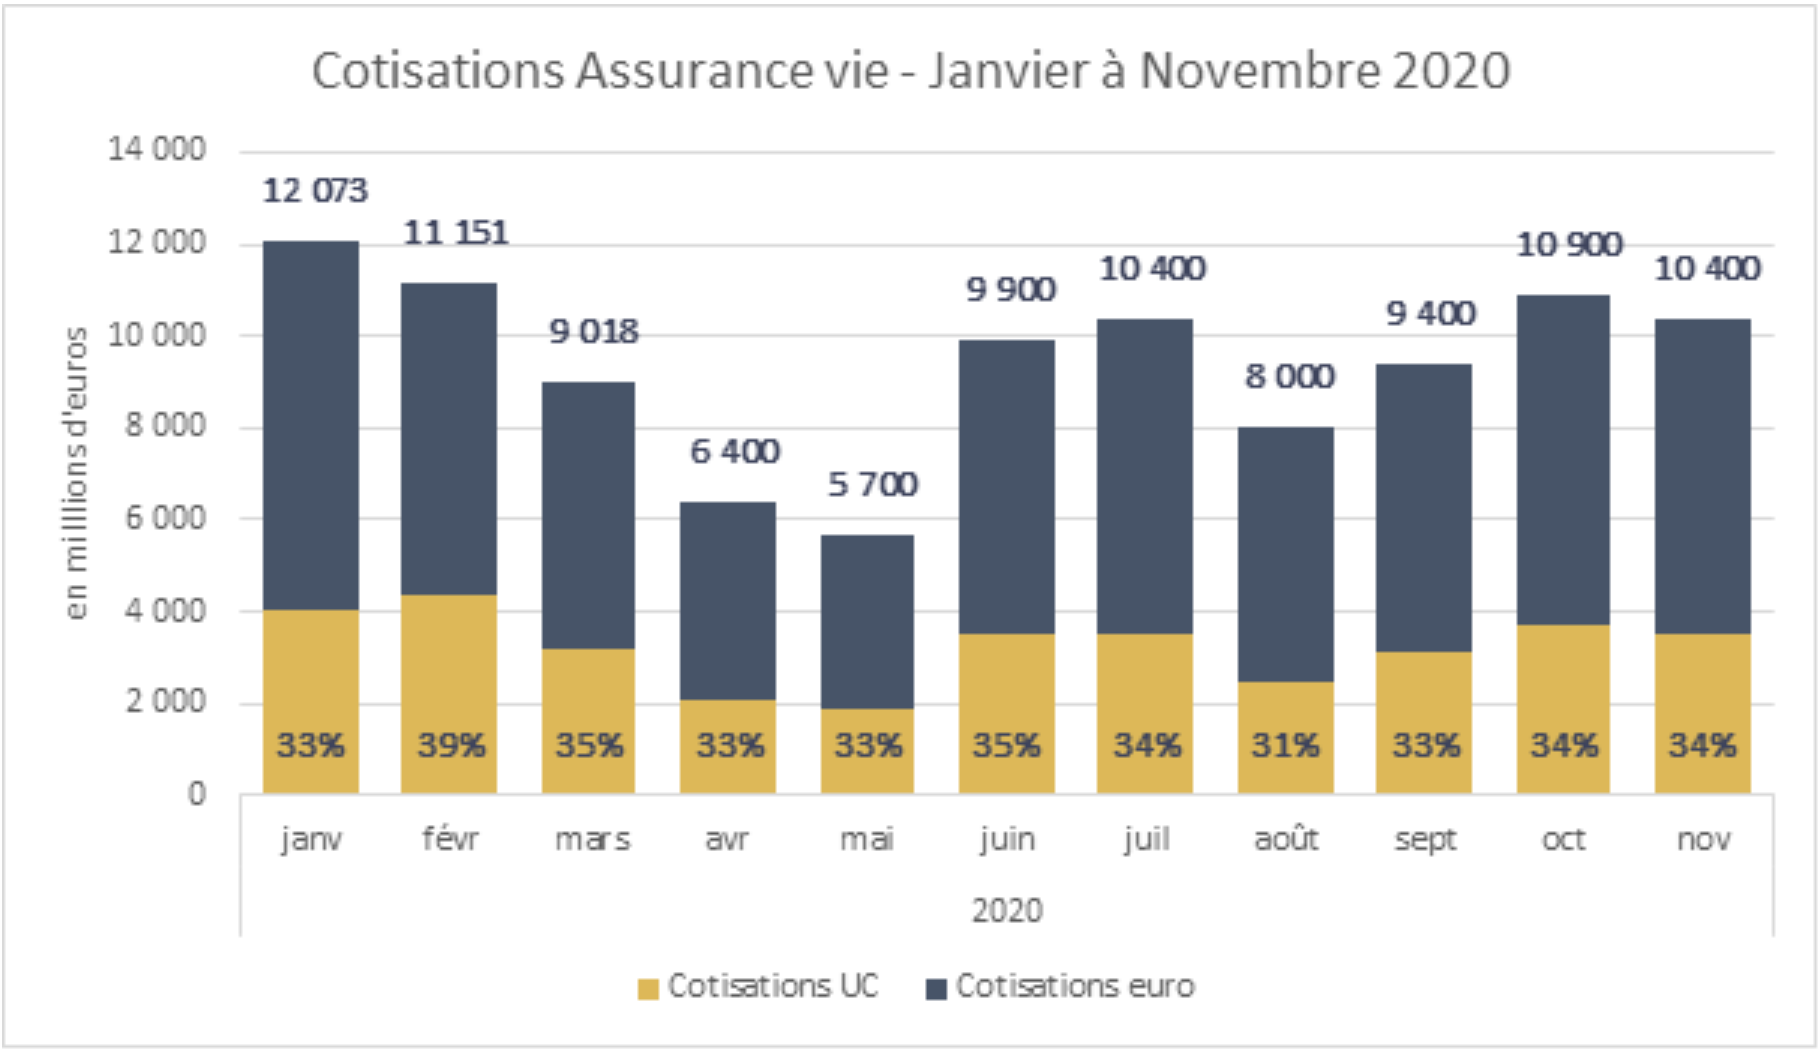 Cotisation Assurance vie - Janvier à Novembre 2020